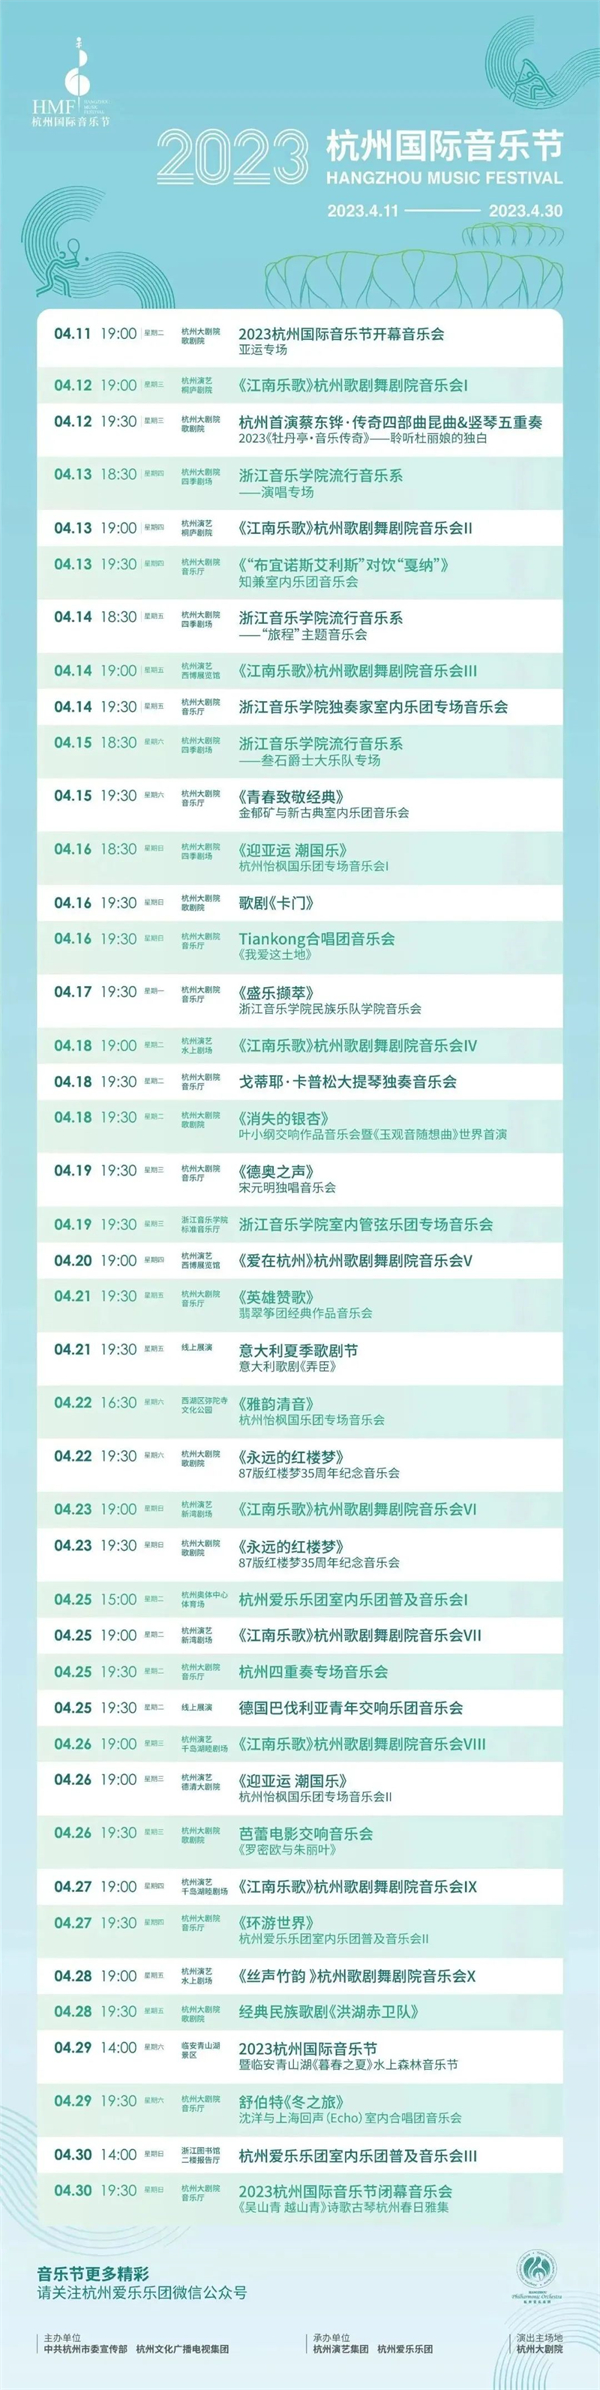 圖2圖說：2023杭州國際音樂節節目單.jpg